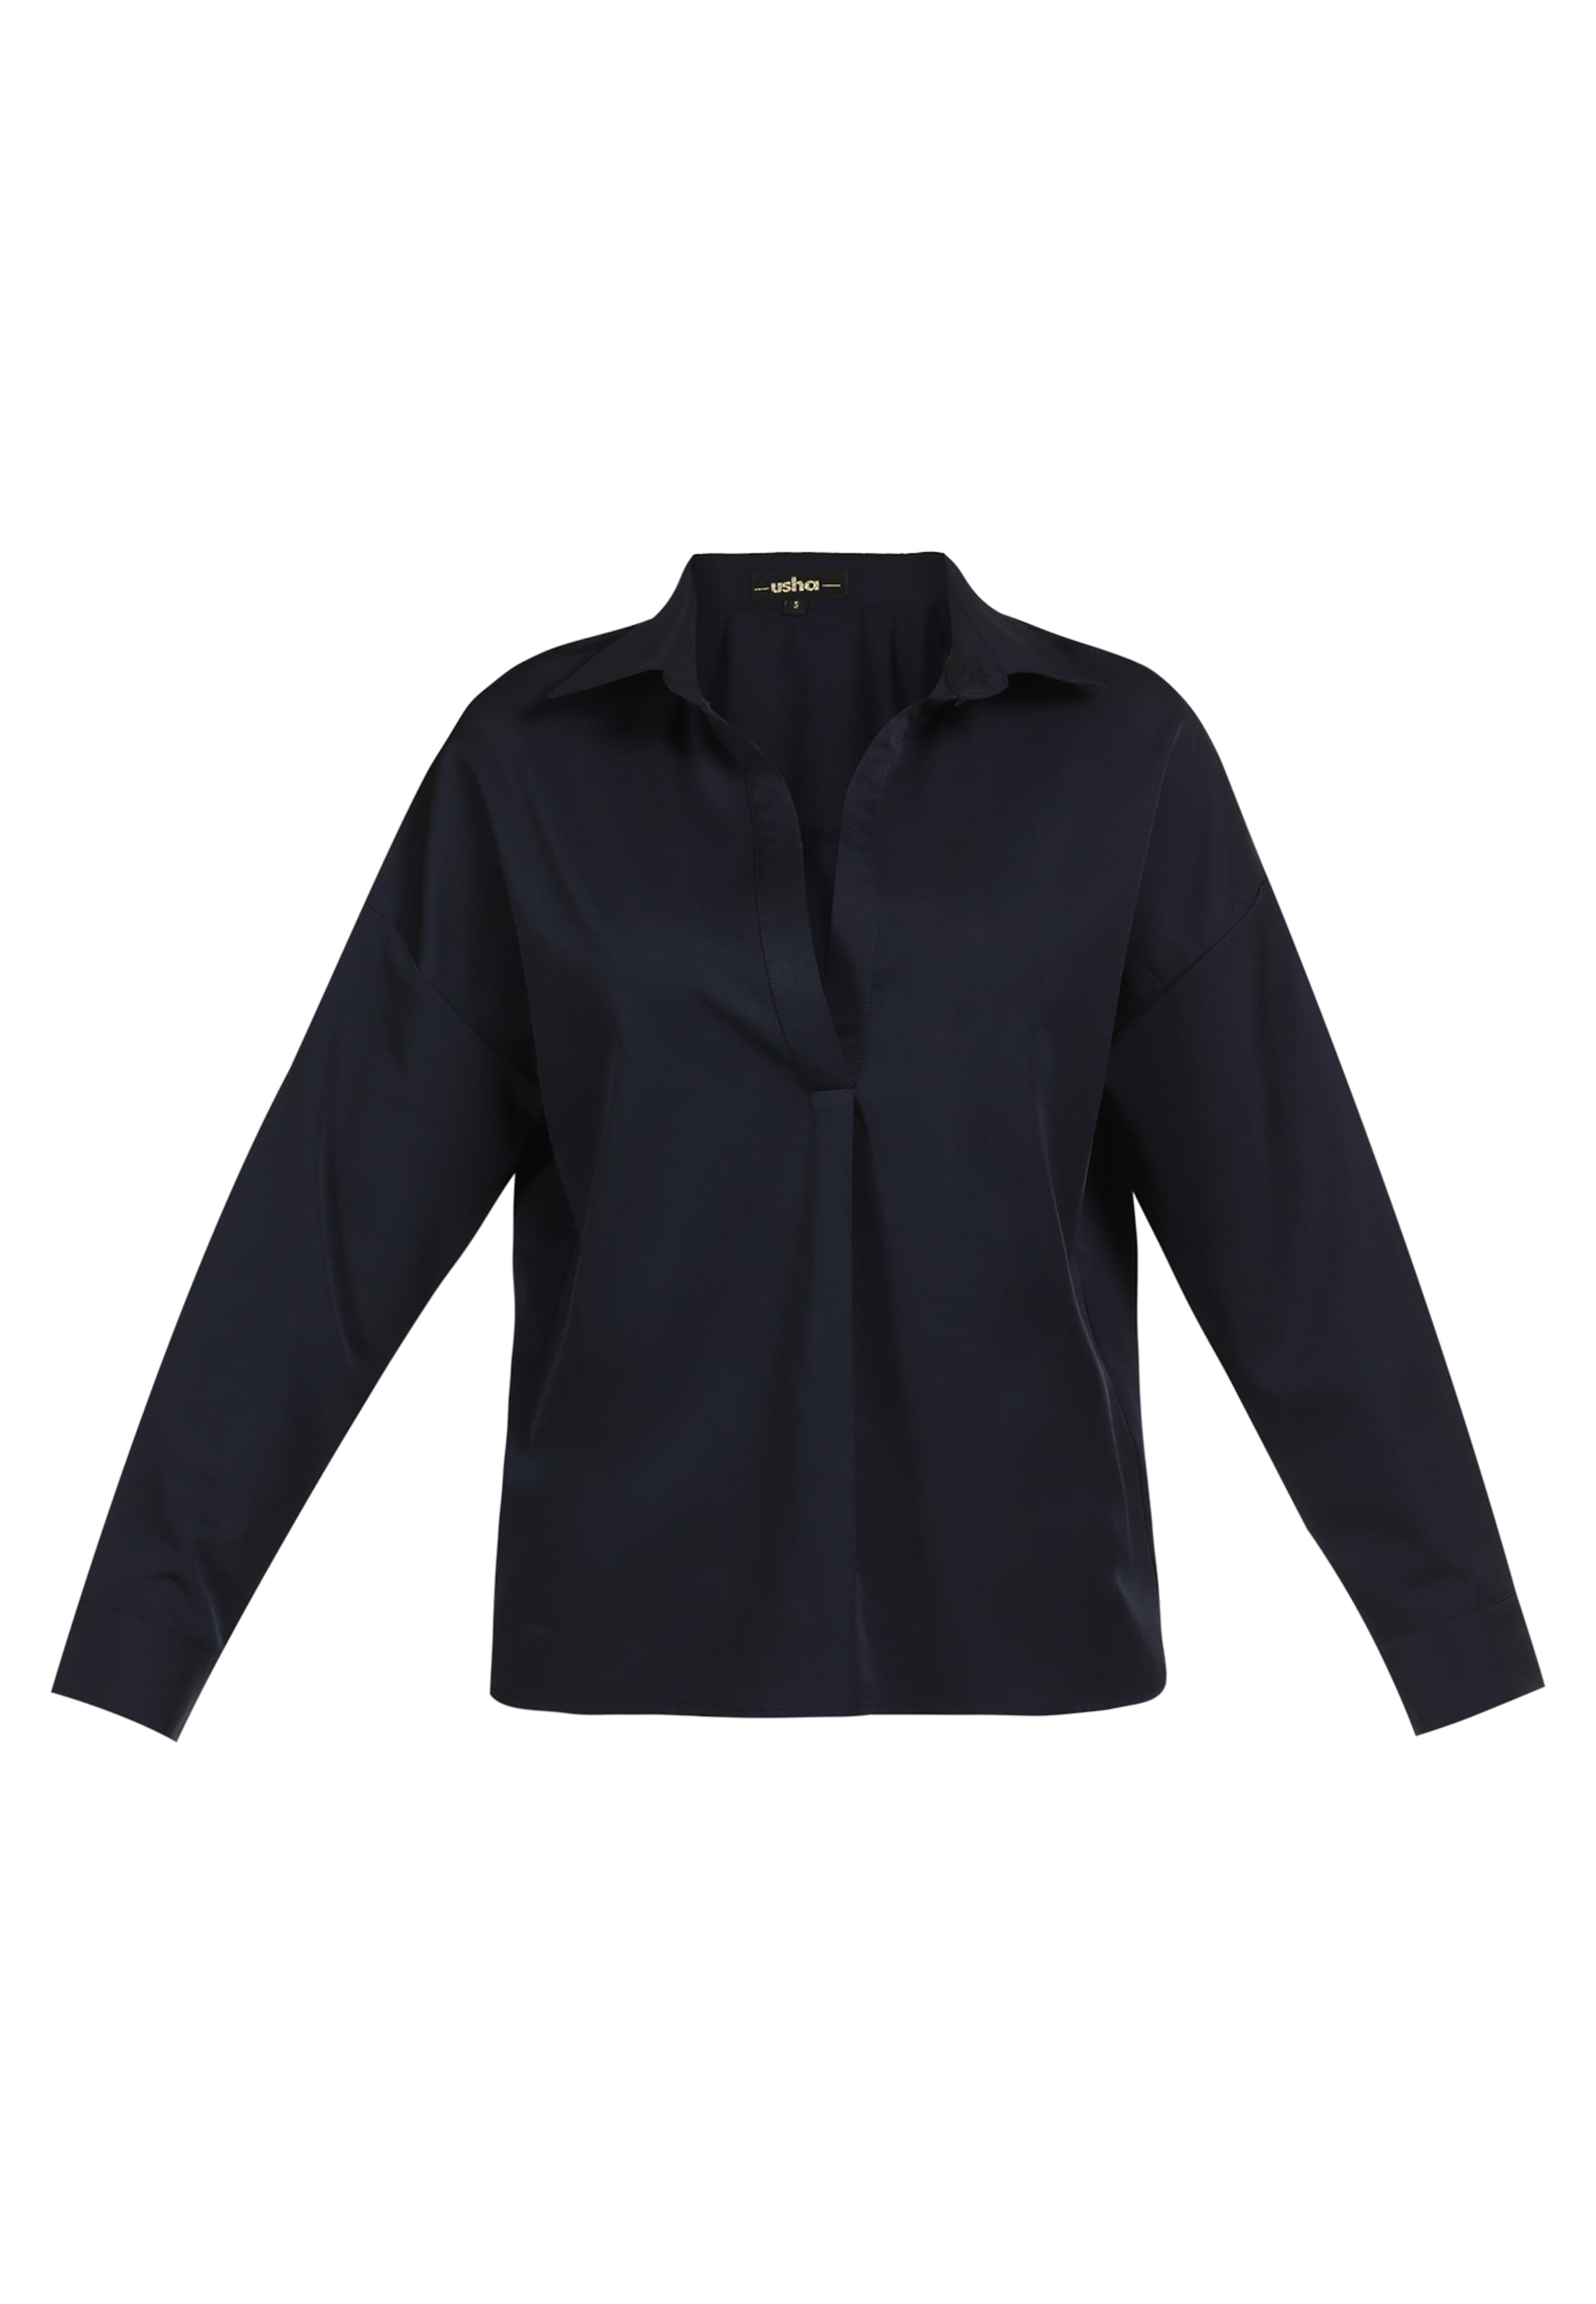 Abbigliamento Donna usha BLACK LABEL Camicia da donna in Blu Notte 